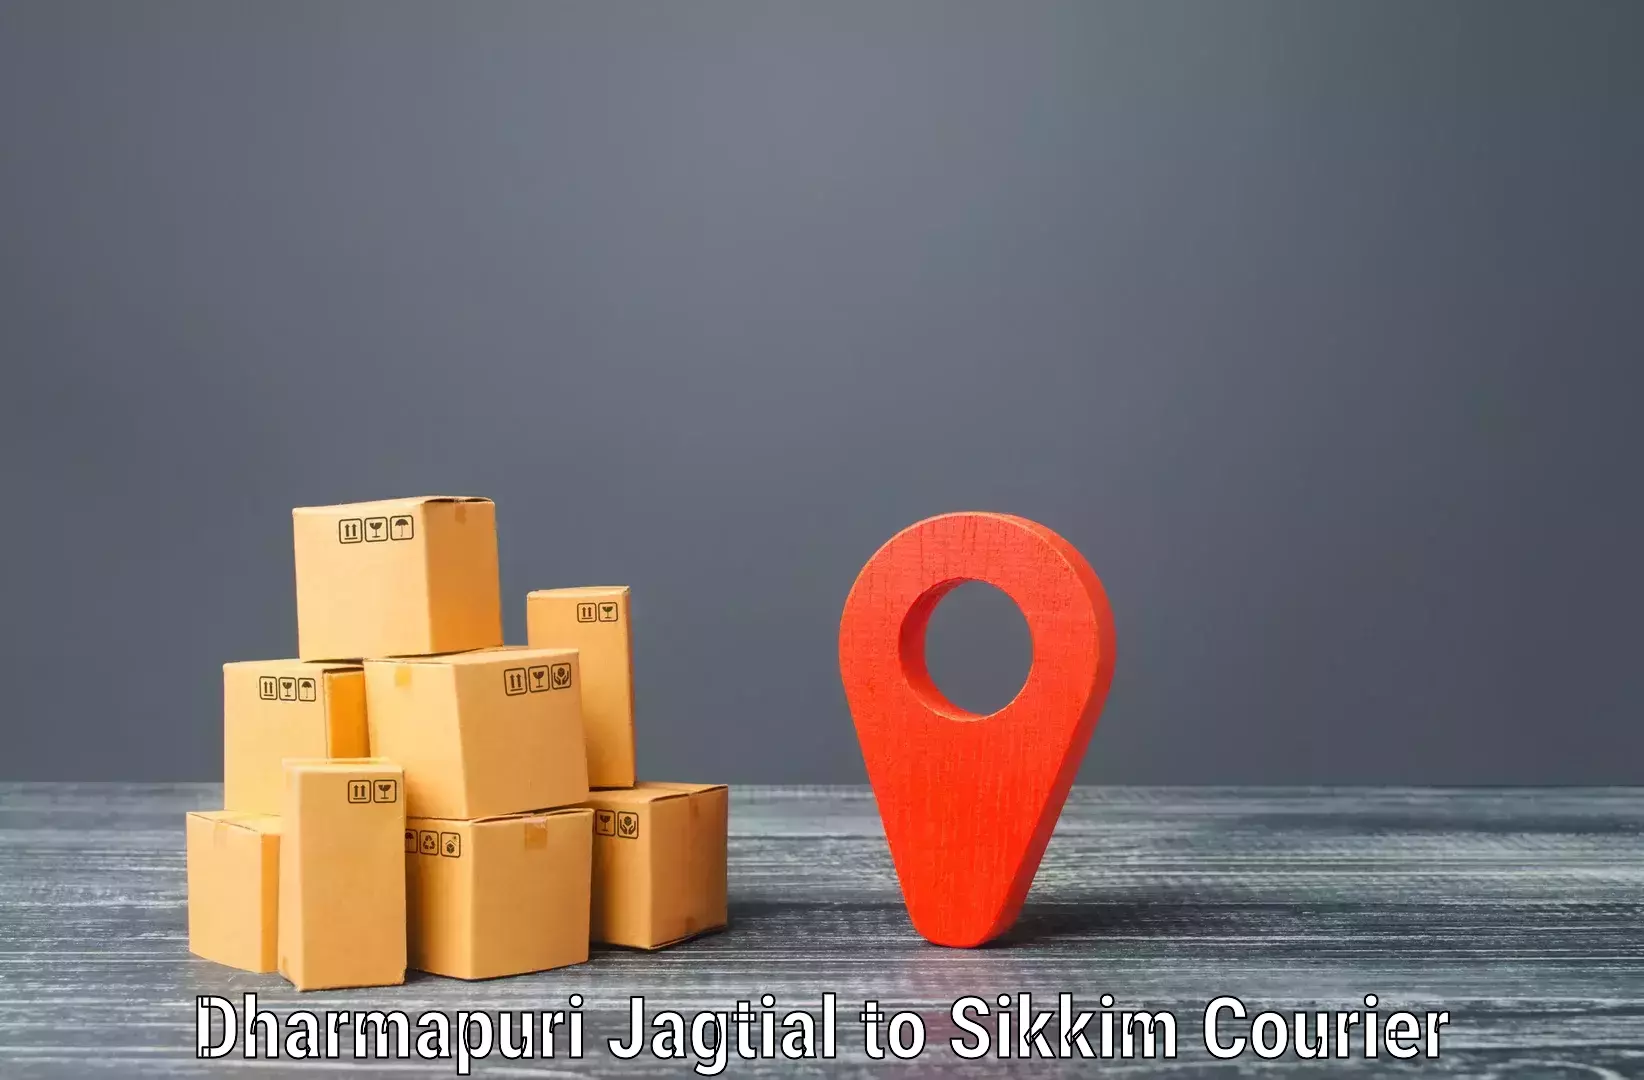 High value parcel delivery in Dharmapuri Jagtial to Singtam